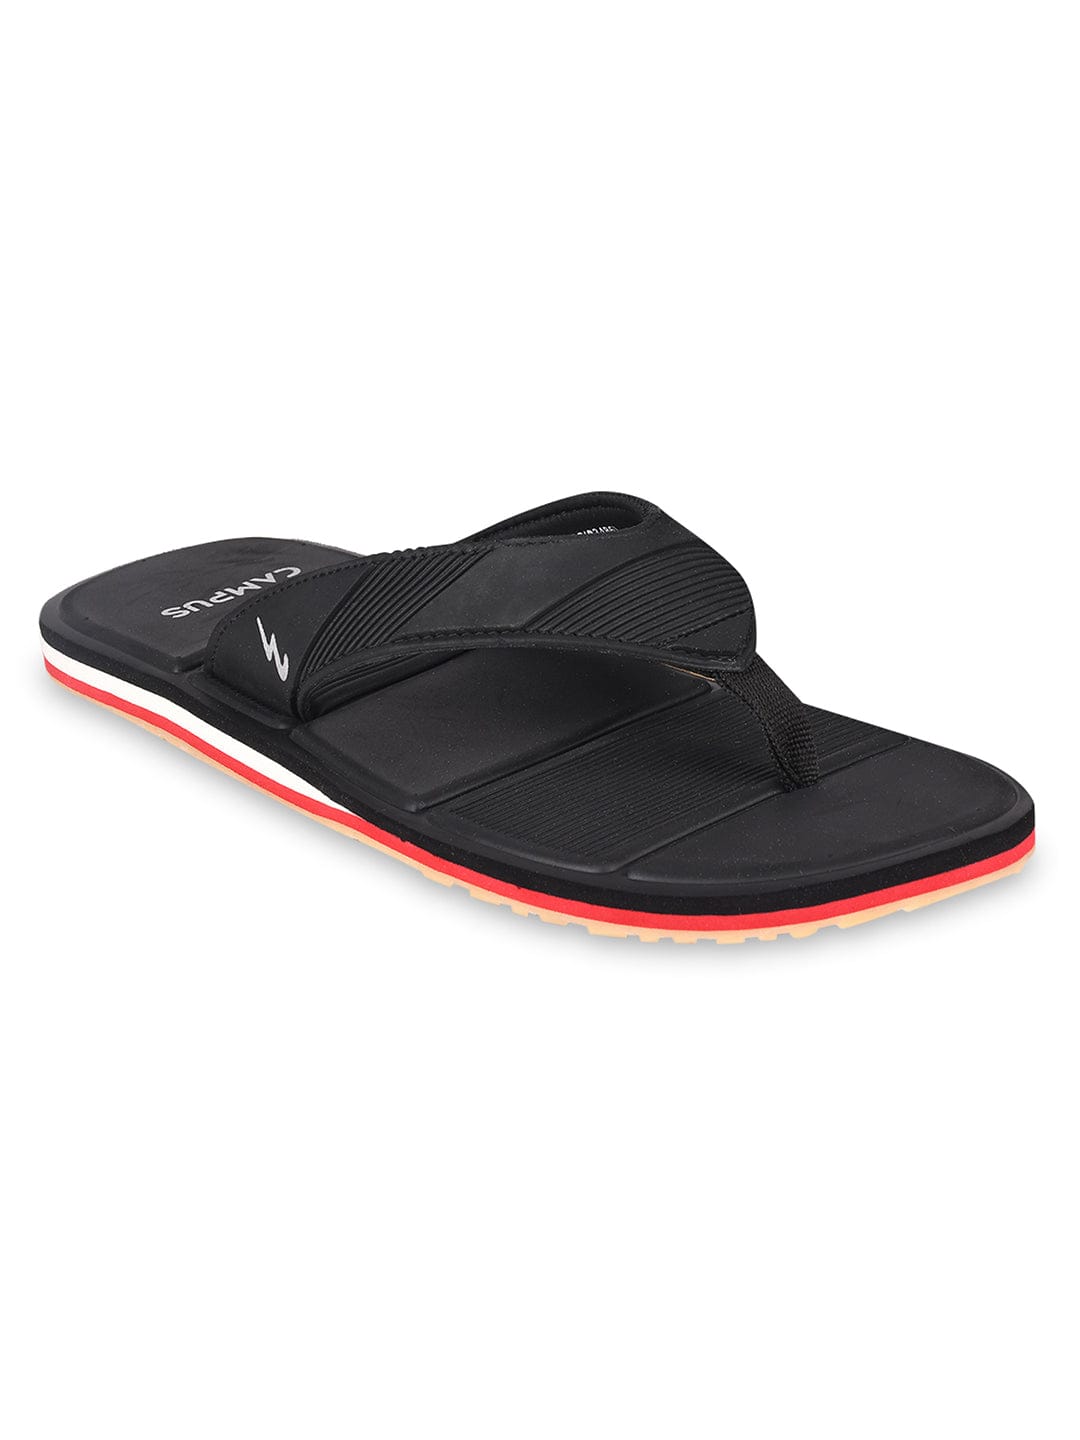 Buy Flip-Flop For Men: Gc-1026A-Blk | Campus Shoes